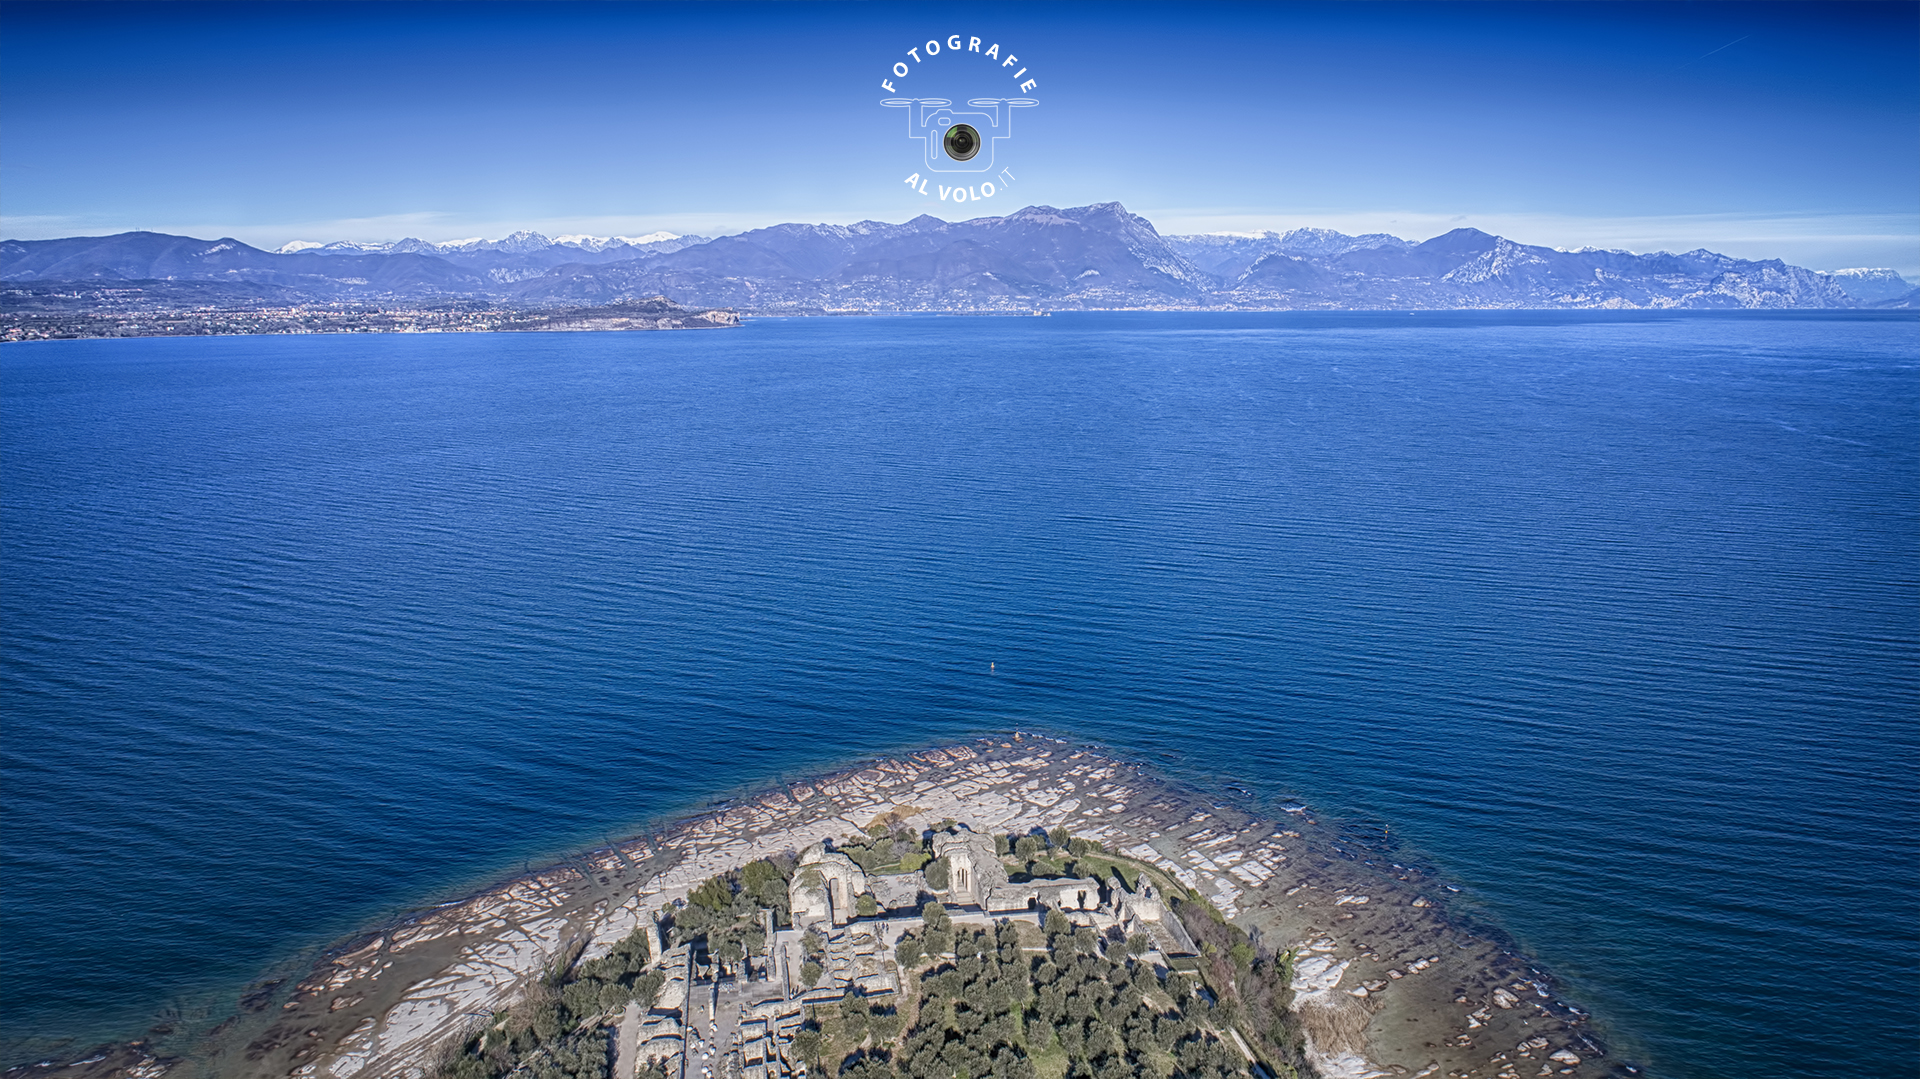 Fotografie Al Volo! Riprese aeree con drone - Sirmione - Lago di Garda - Tobia Fattori